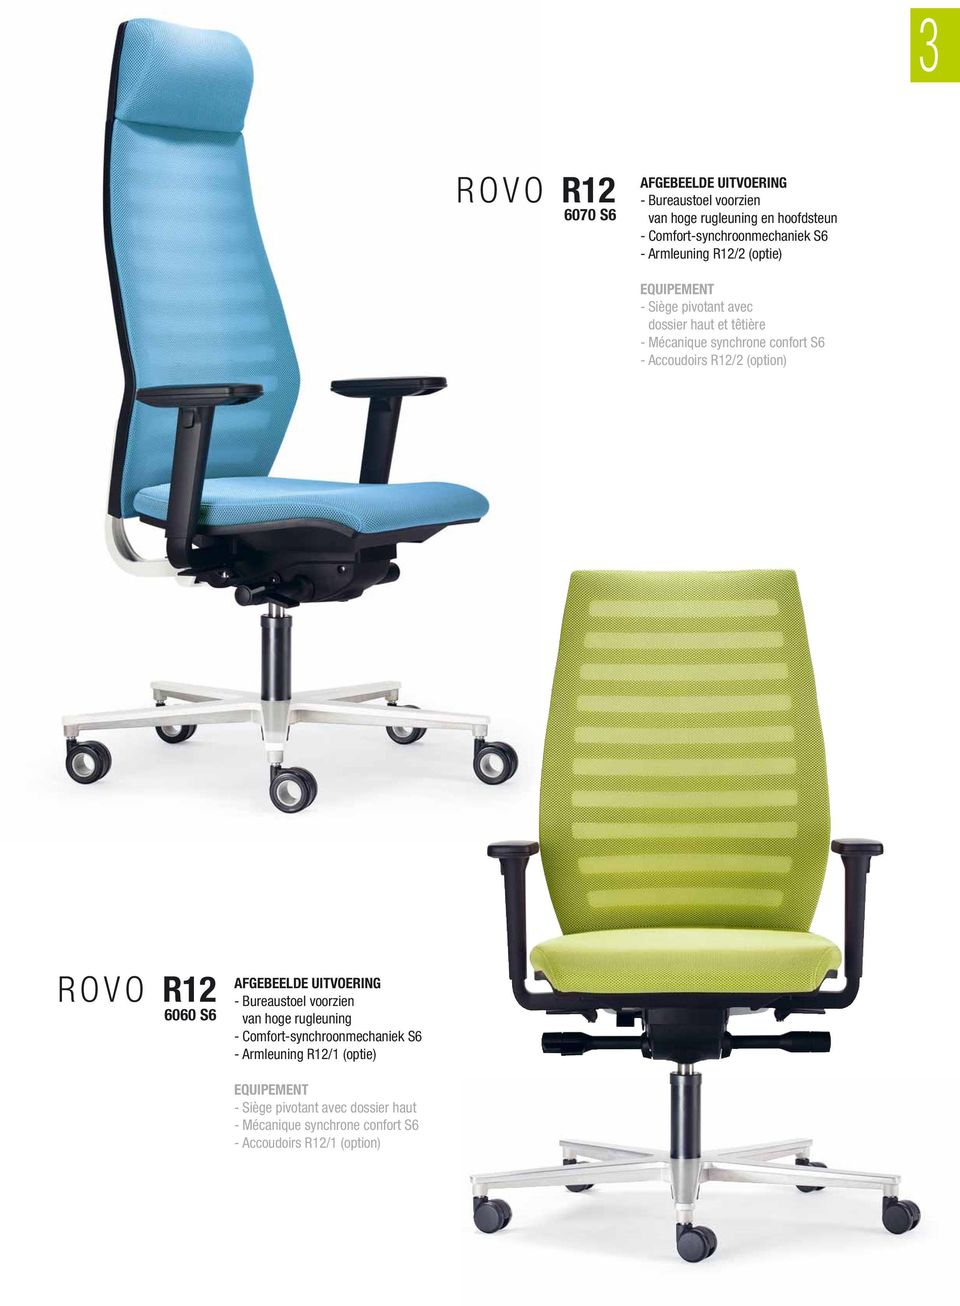 R12/2 (option) ROVO R12 6060 S6 AFGEBEELDE UITVOERING - Bureaustoel voorzien van hoge rugleuning - Comfort-synchroonmechaniek S6 -